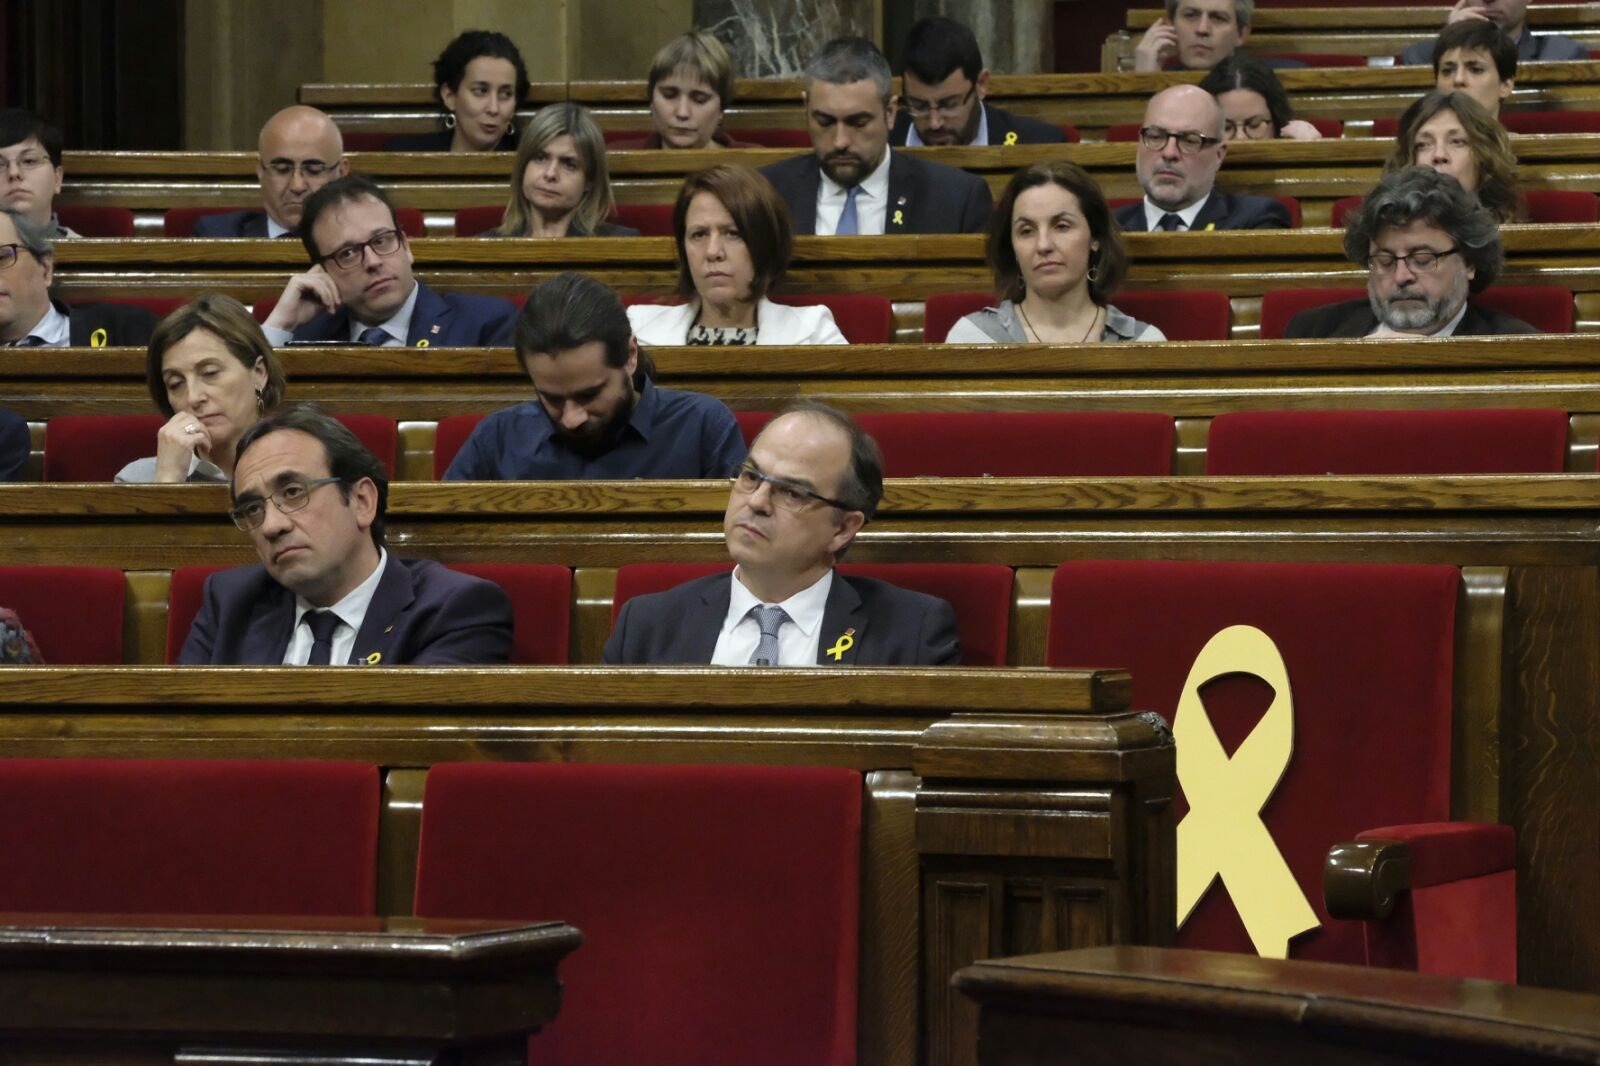 Jordi Turull al costat de Josep Rull al Parlament en la sessió d'investidura del polític de Parets, abans d'entrar a la presó per ordre del Tribunal Suprem